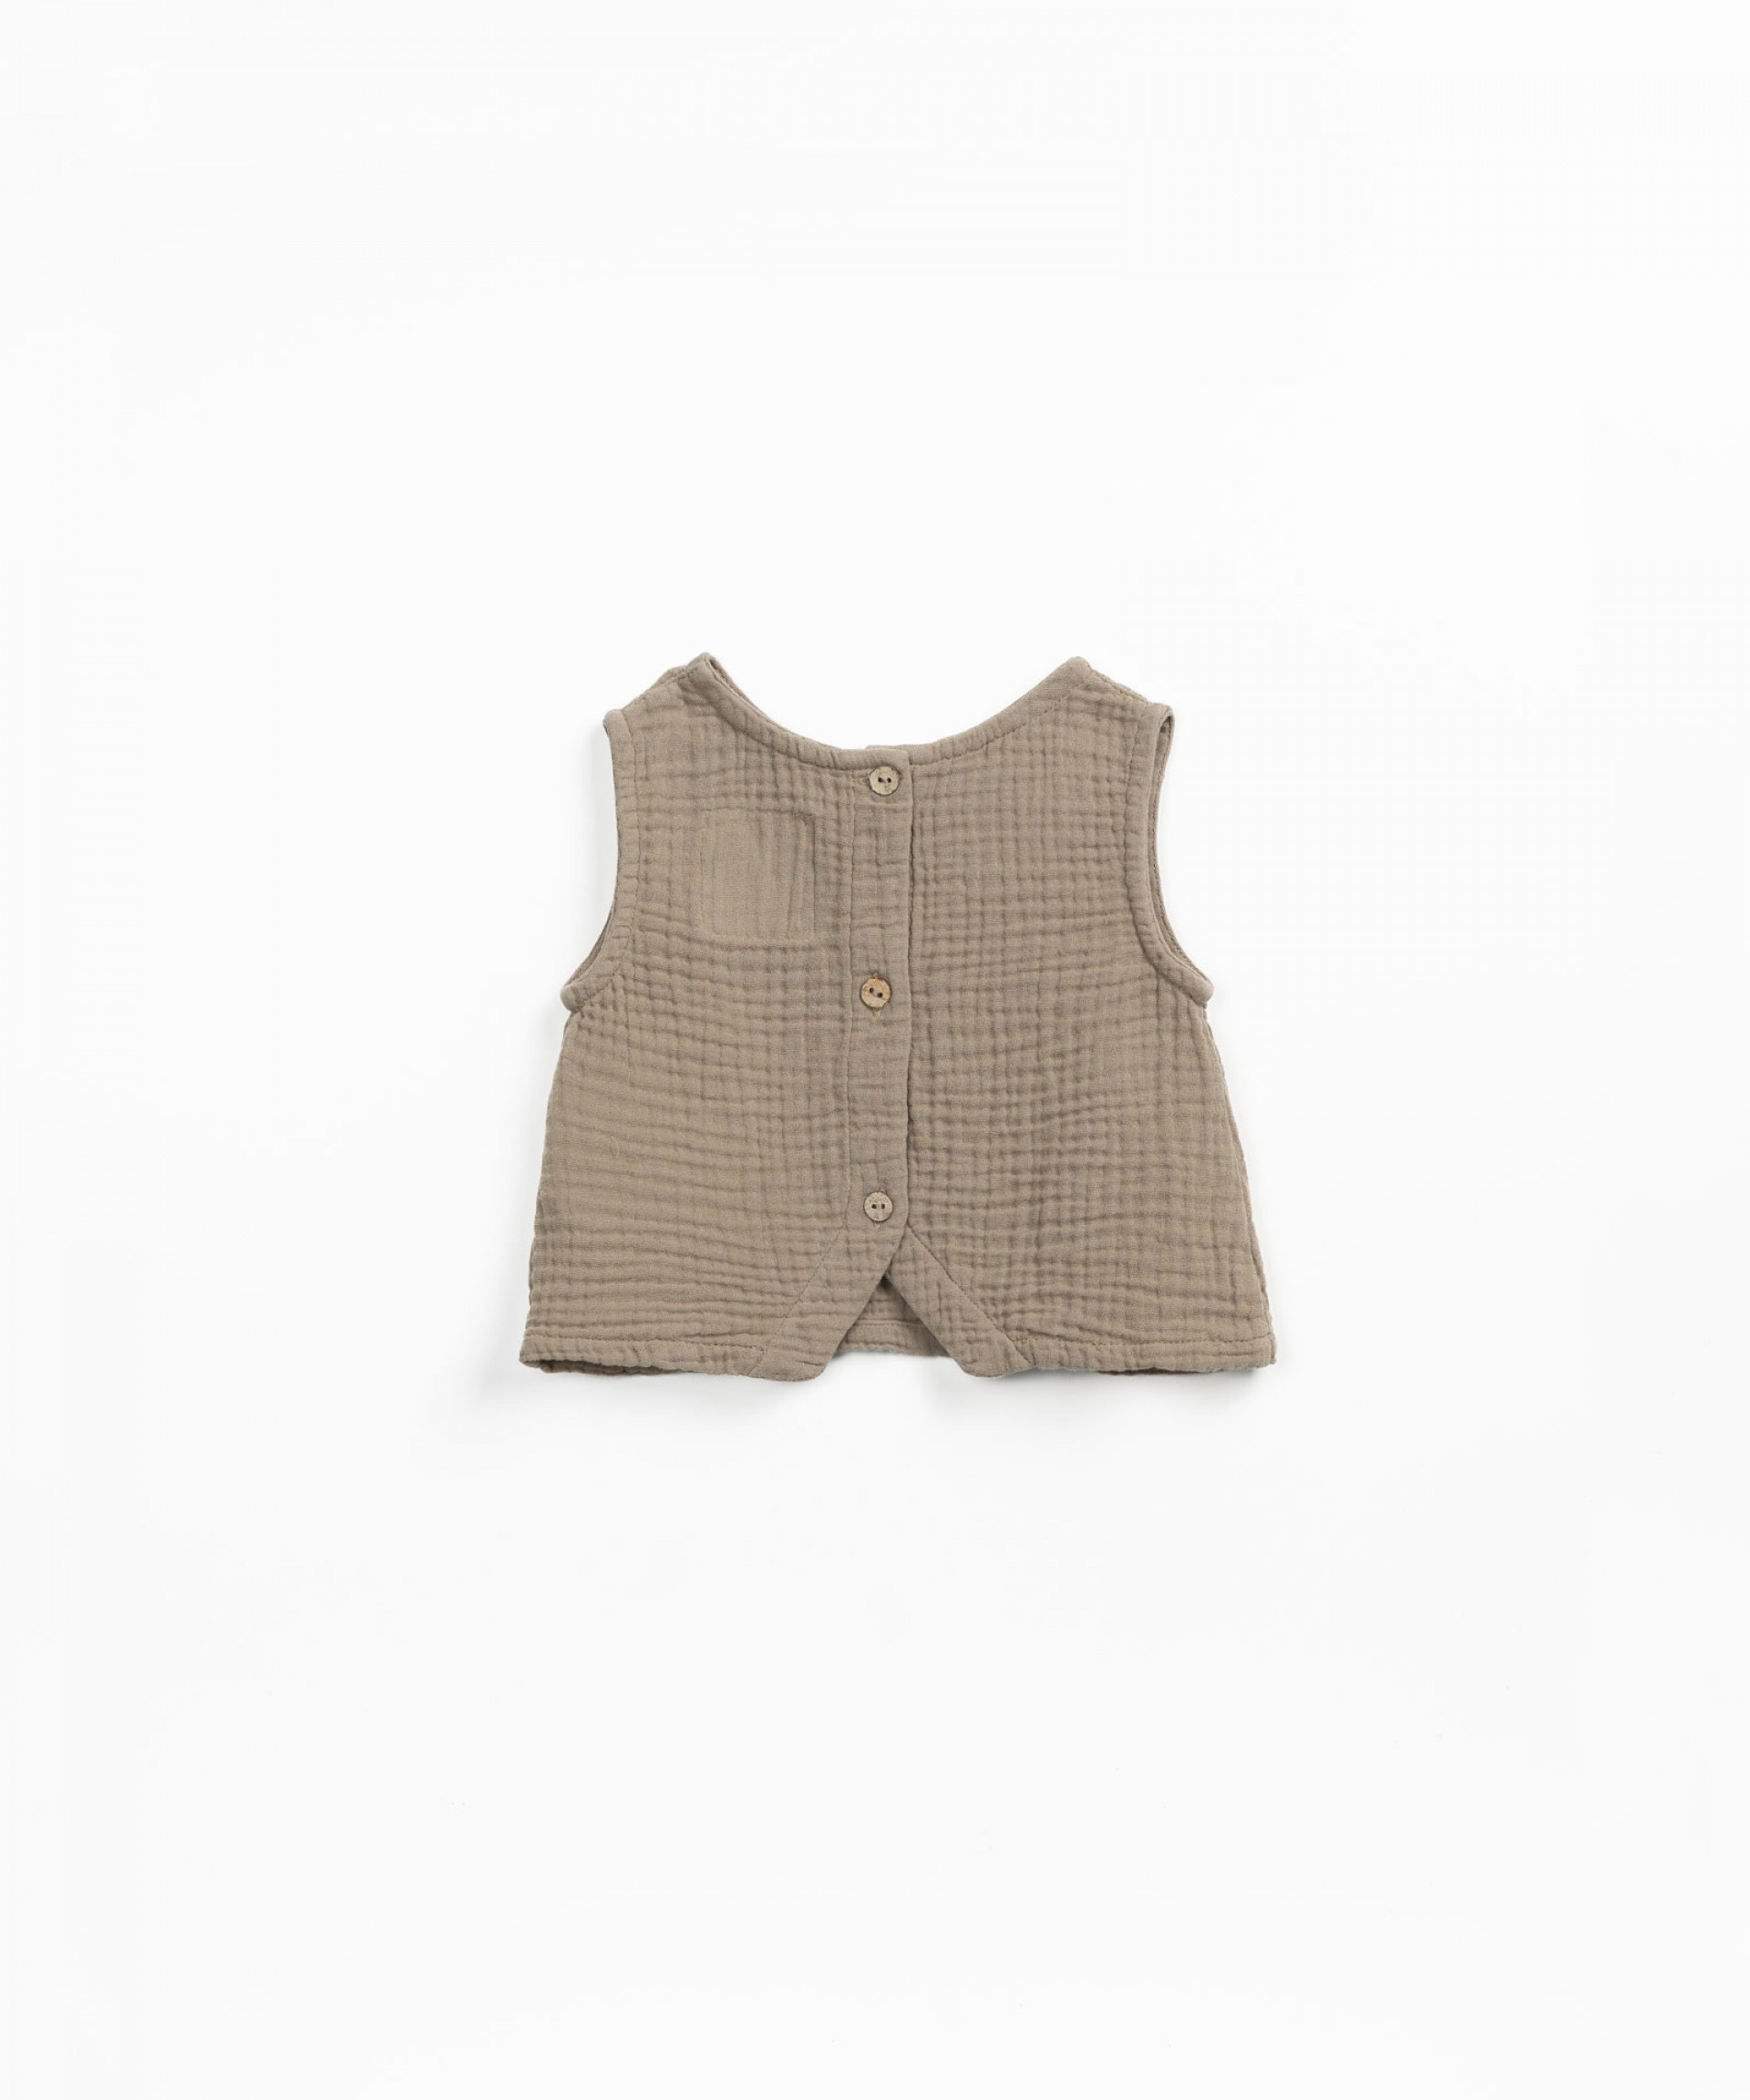 Blusa con abertura en la espalda | Textile Art